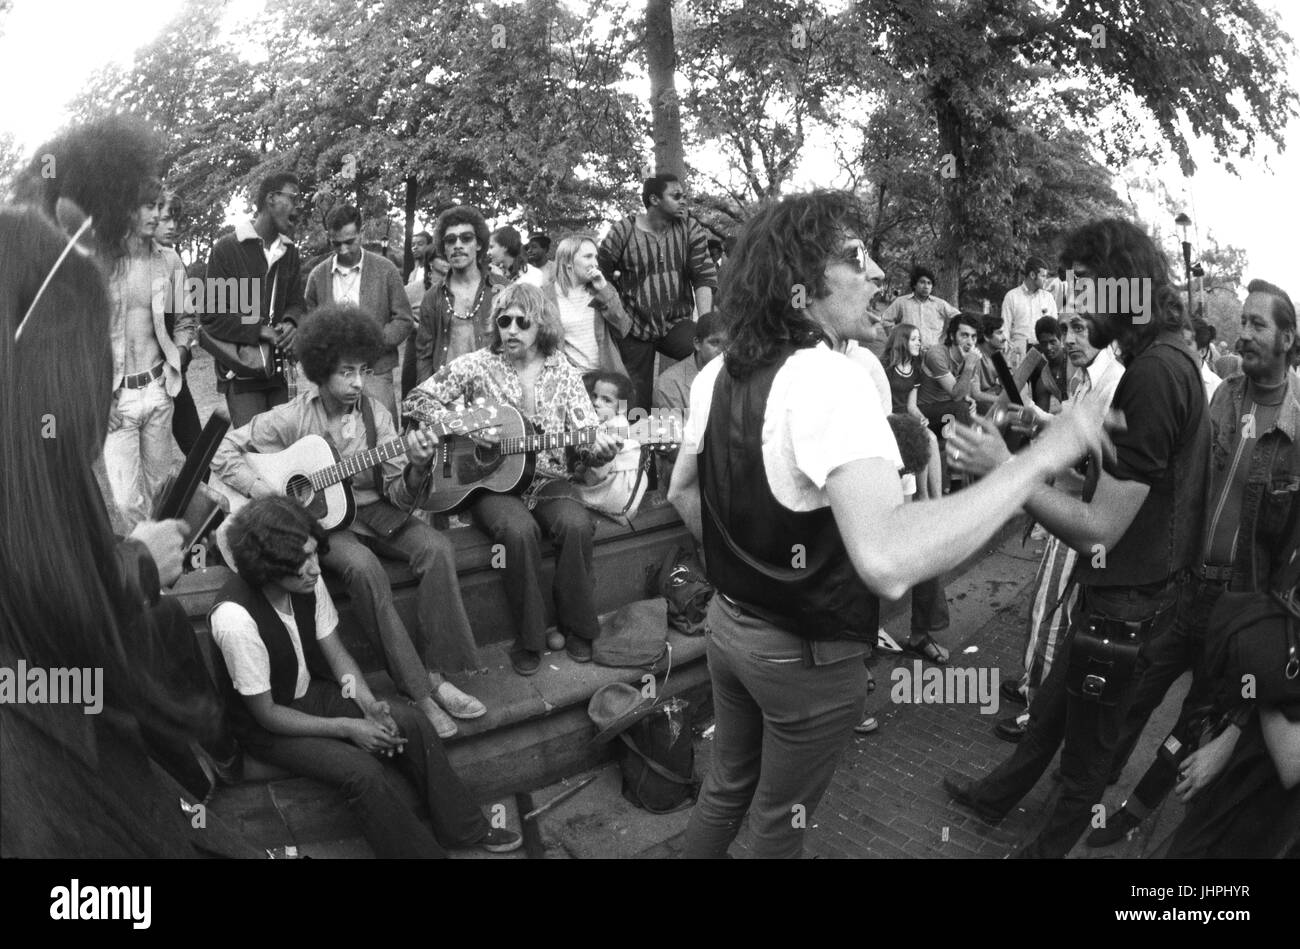 David Peel, con giubbotto senza maniche, eseguendo con il Lower East Side Band nel parco centrale 1969 Foto Stock